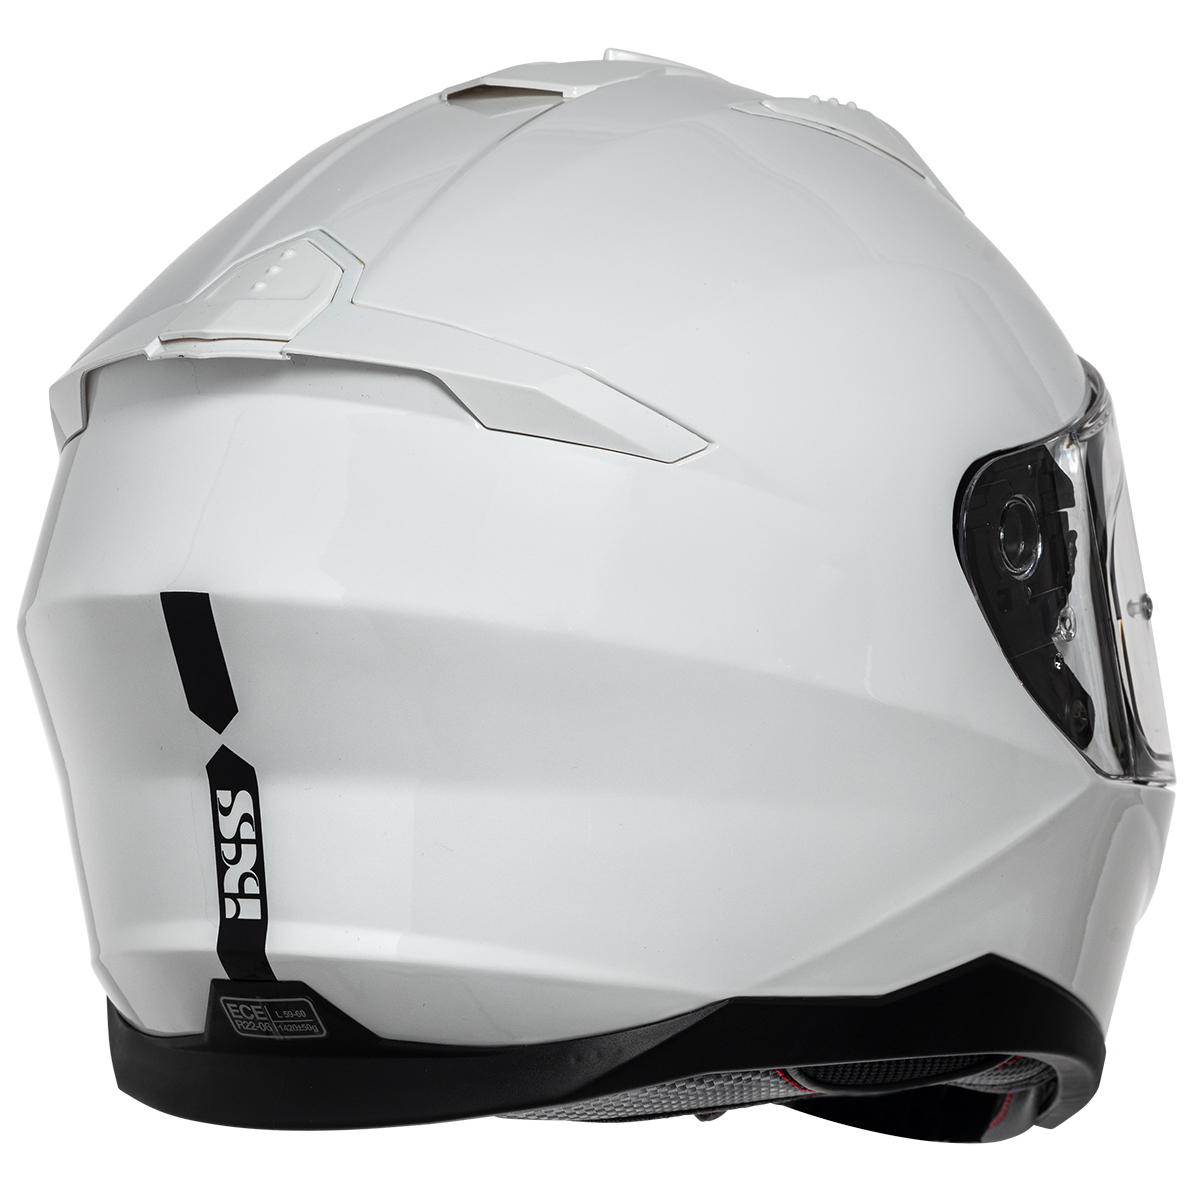 iXS Helm iXS217 1.0, weiß